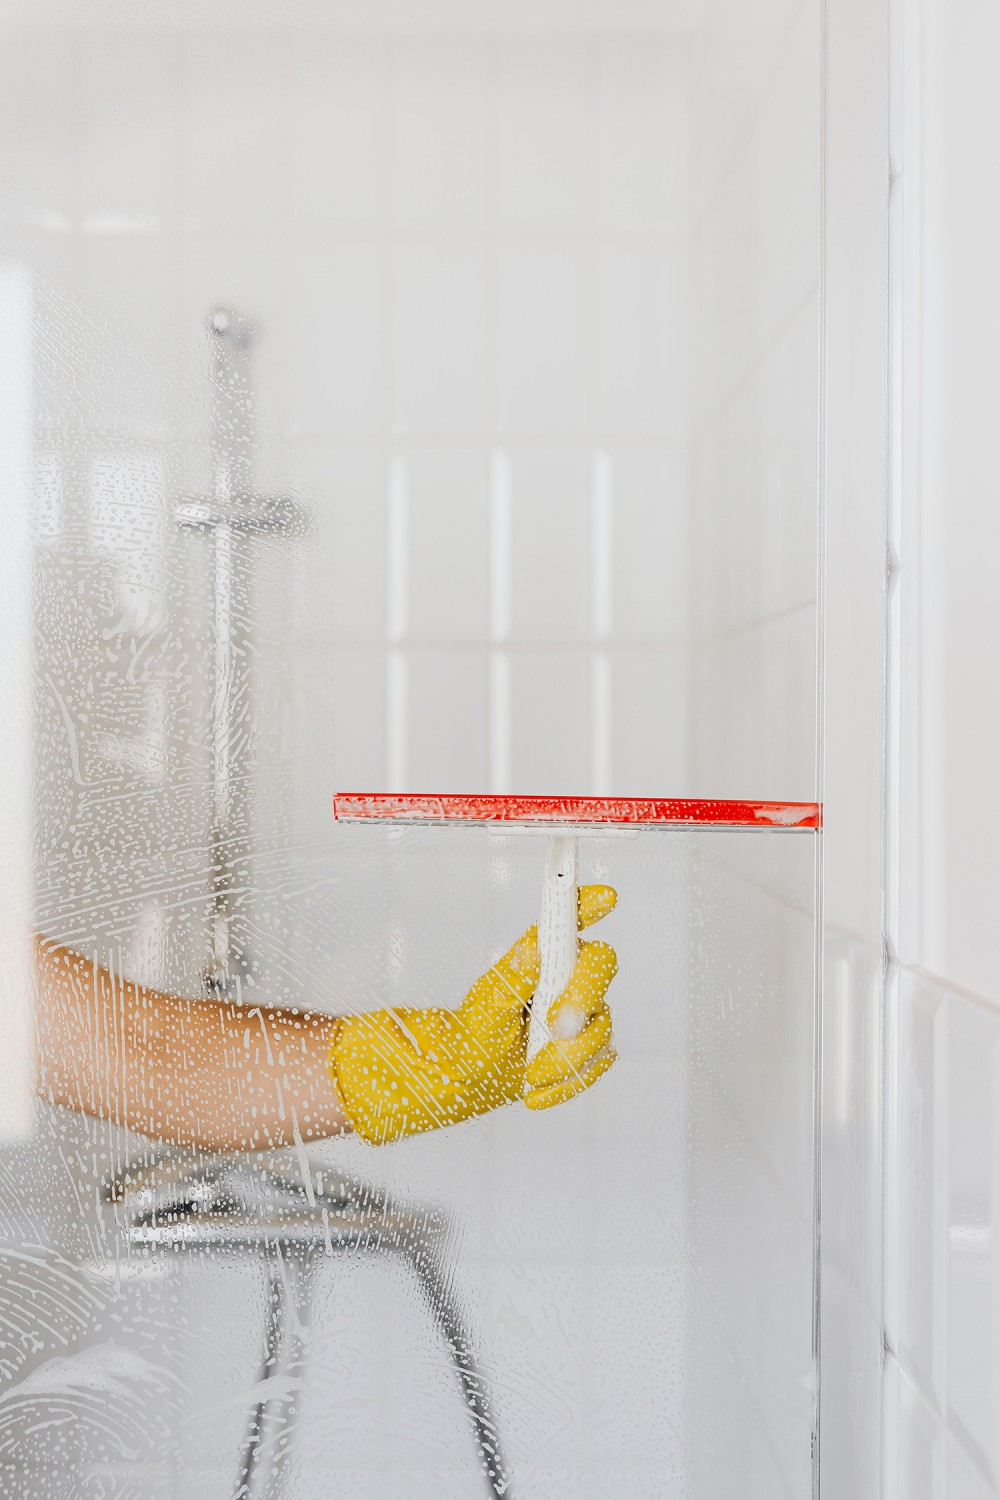 Biely ocot pomáha žene pri umývaní skla sprchovacieho kúta od vodného kameňa. Žena stiera kvapky vody stierkou v rukaviciach.